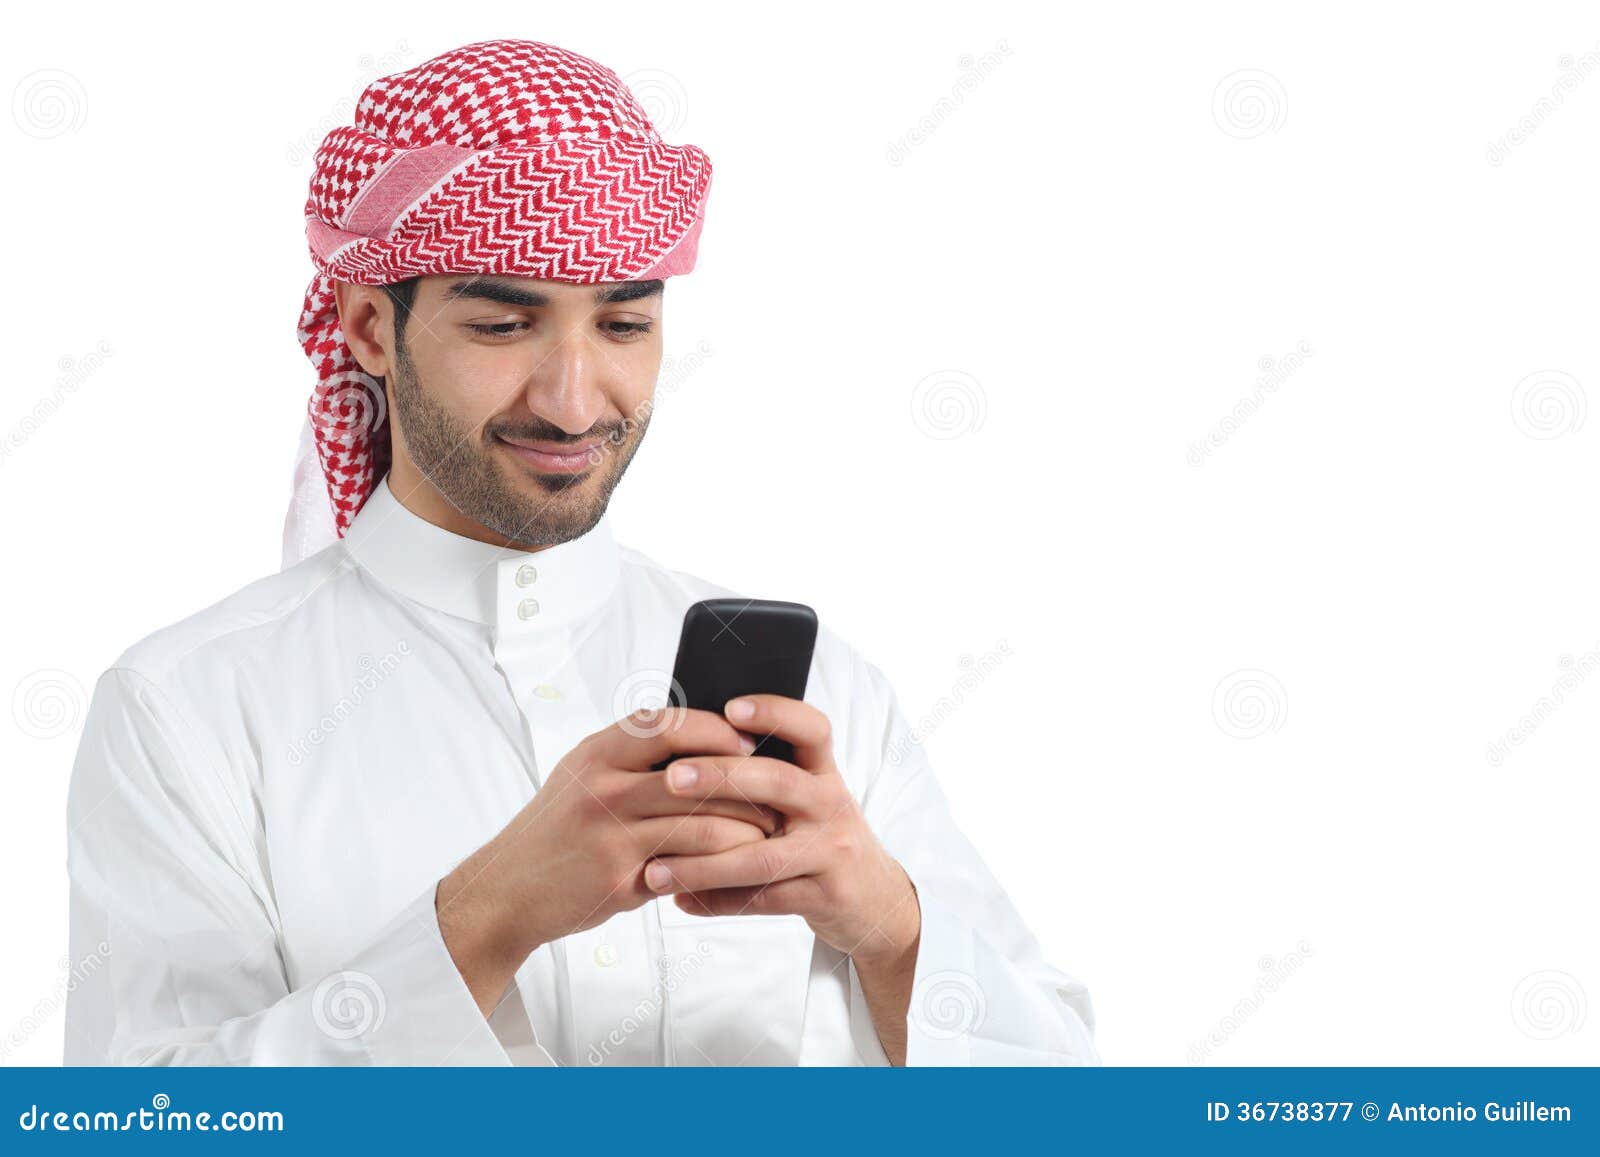 Телефон арабов. Араб с телефоном. Араб в городе с телефоном. Араб смотрит в телефон. Араб с ноутбуком.